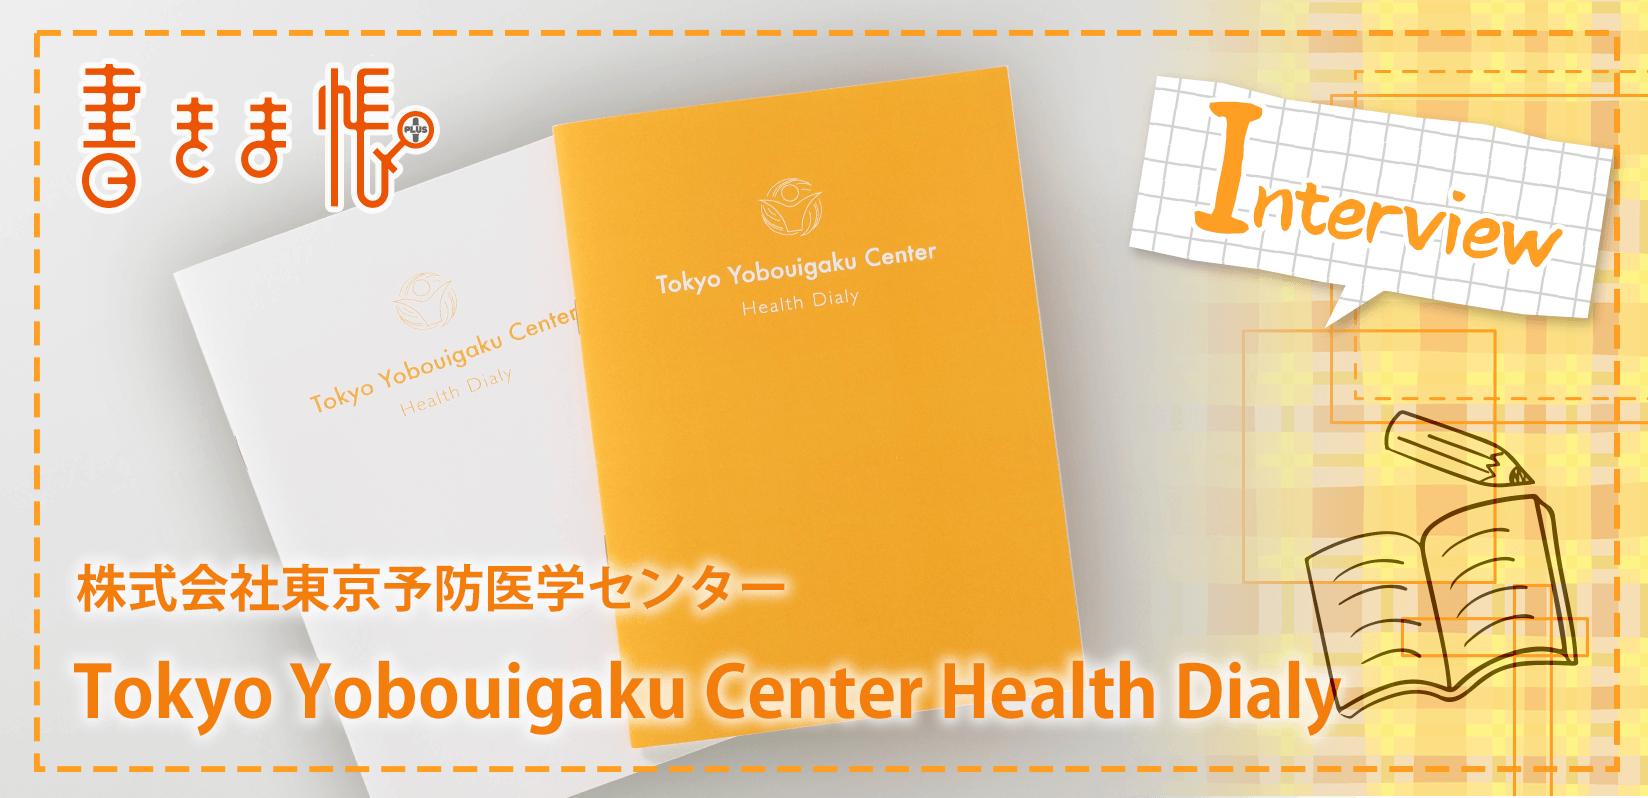 株式会社東京予防医学センター様製作のオリジナルノート「Tokyo Yobouigaku Center Health Dialy」